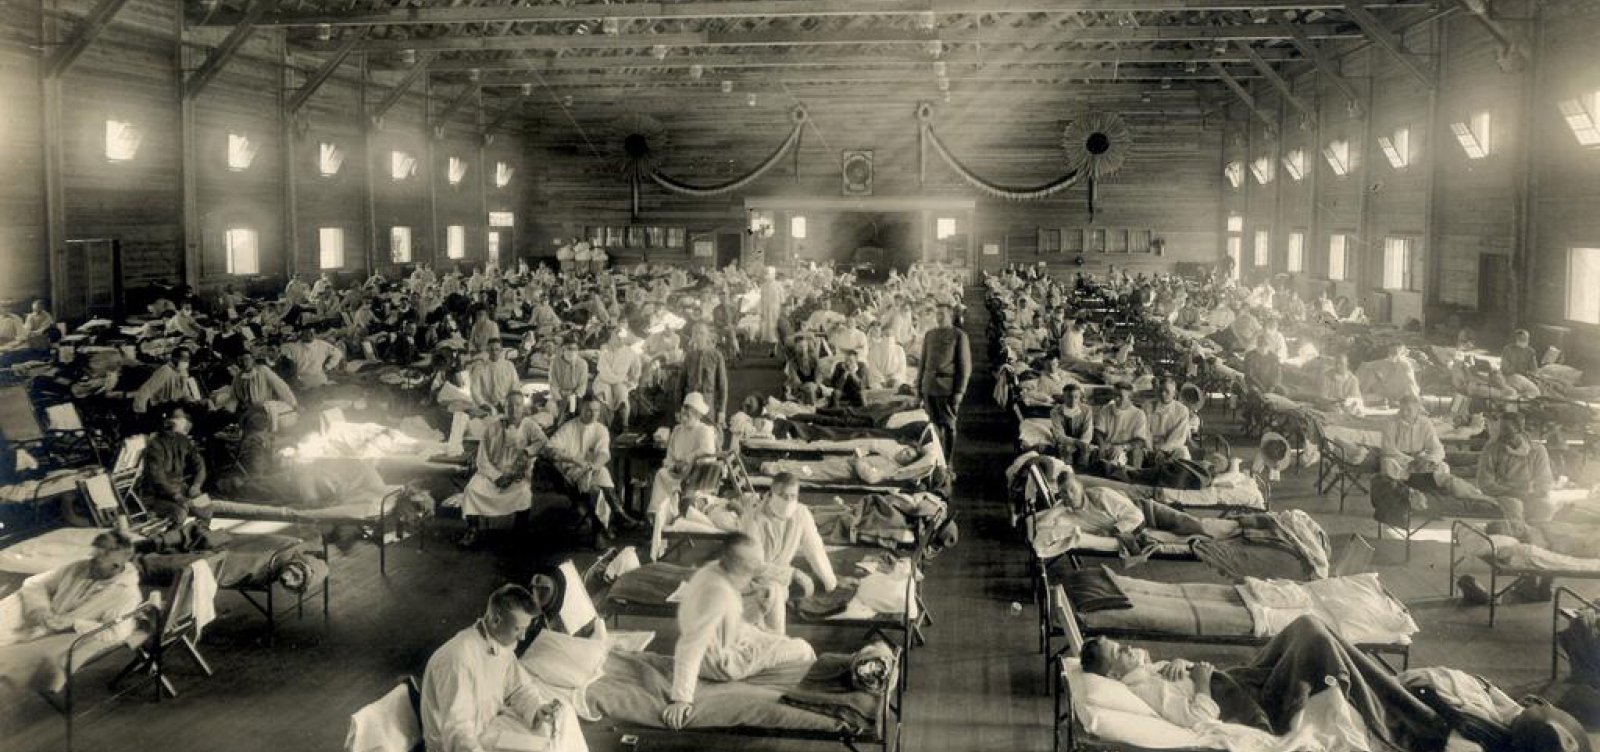 Coronavírus e gripe espanhola: fotos antigas mostram semelhanças durante pandemias